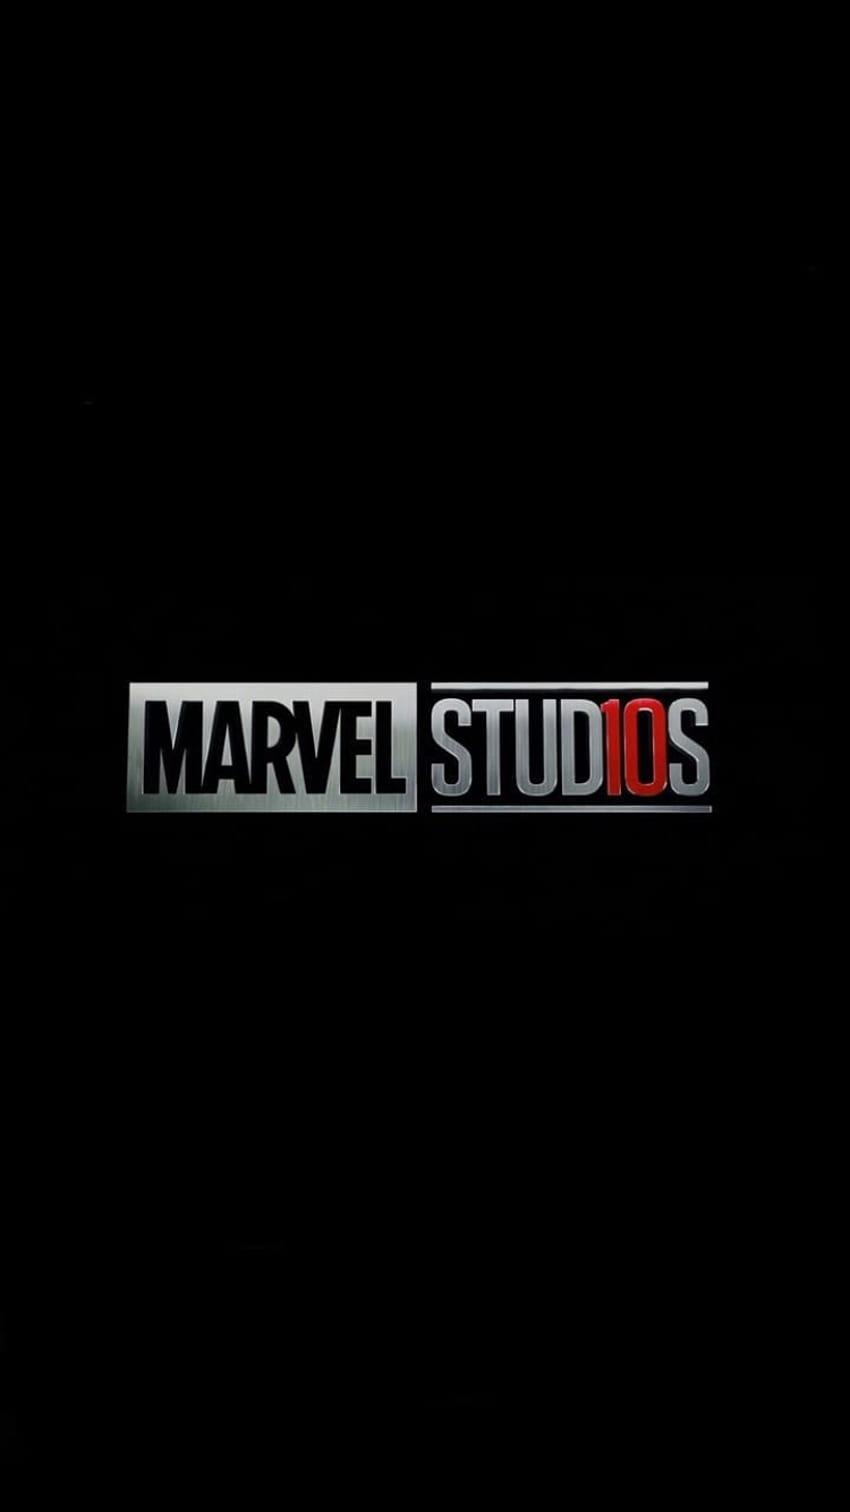 Lista de los mejores s de Marvel para iPhone hoy. Marvel, logotipo de Marvel Studios fondo de pantalla del teléfono